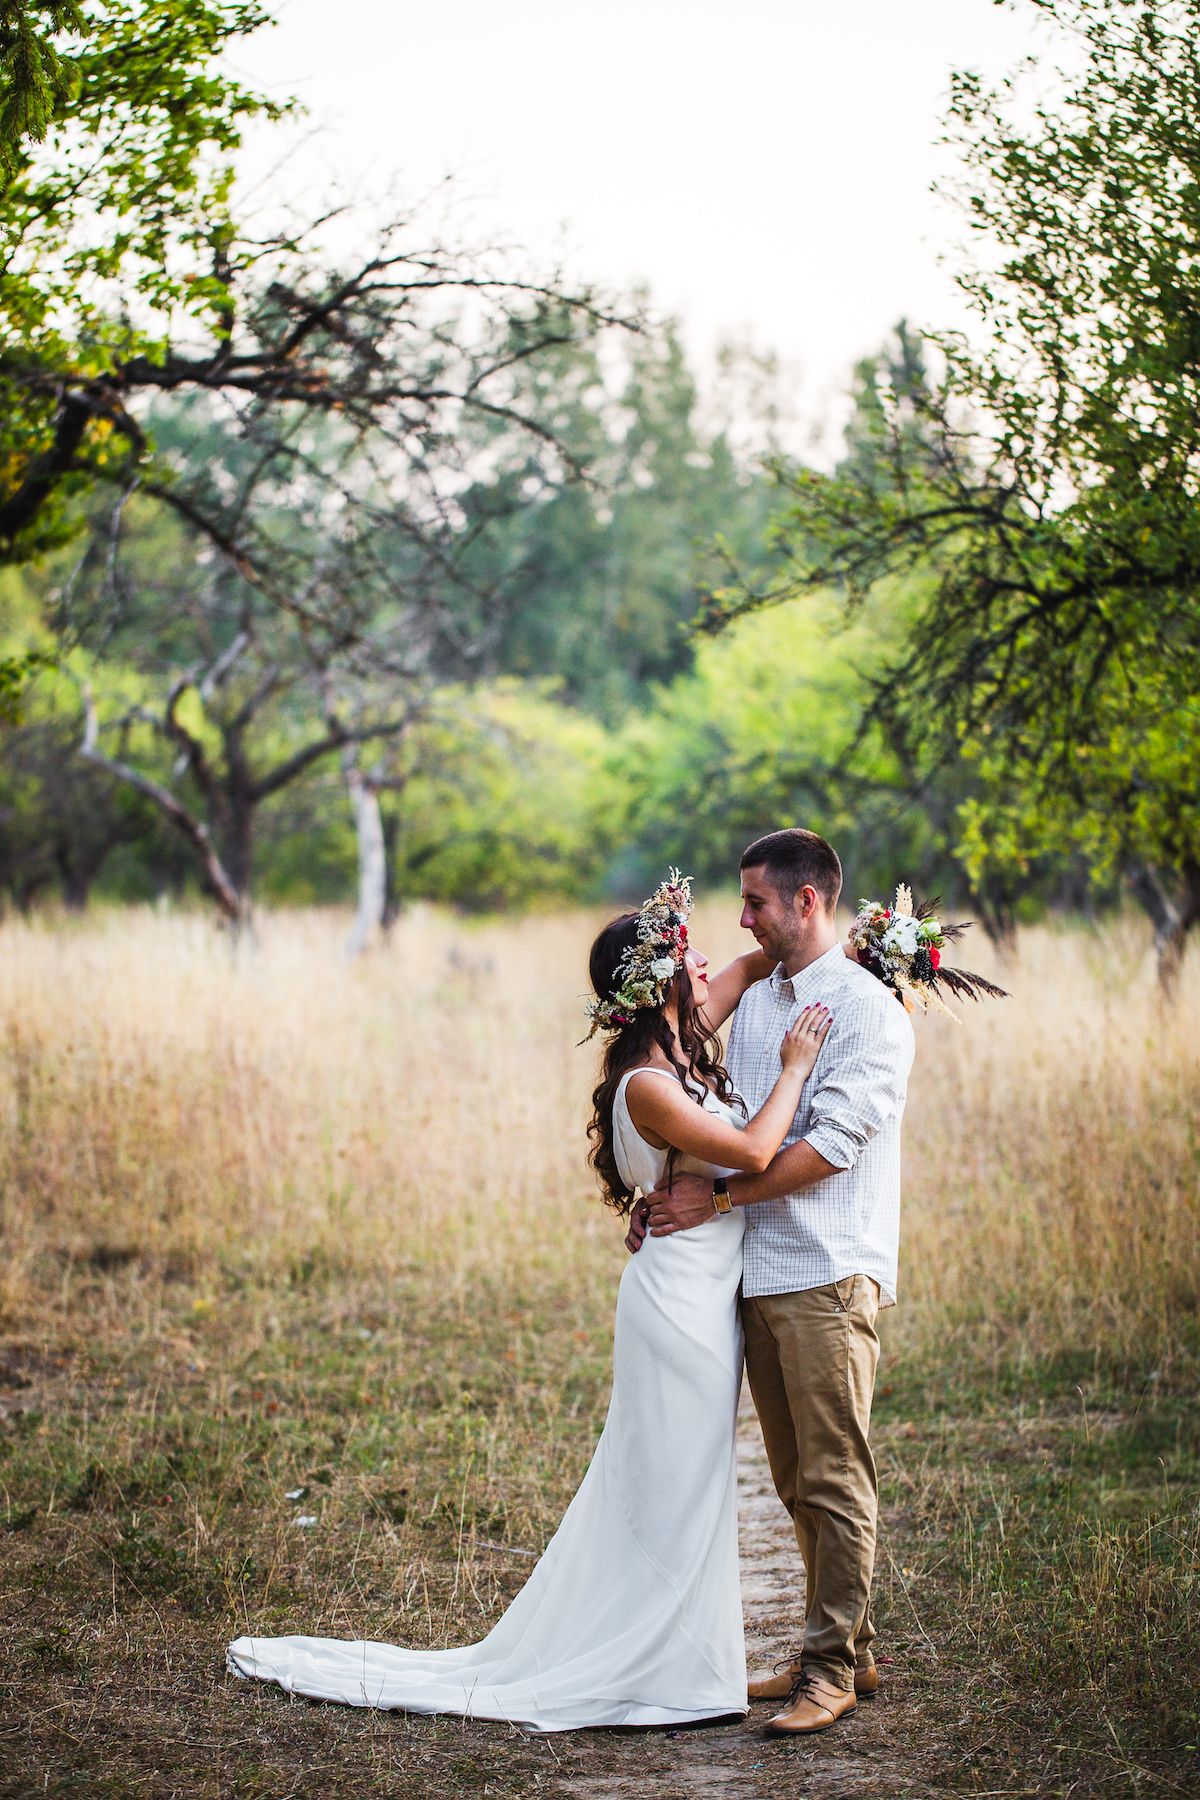 Eine Braut und ein Bräutigam küssen sich mitten in einem Obstgarten.